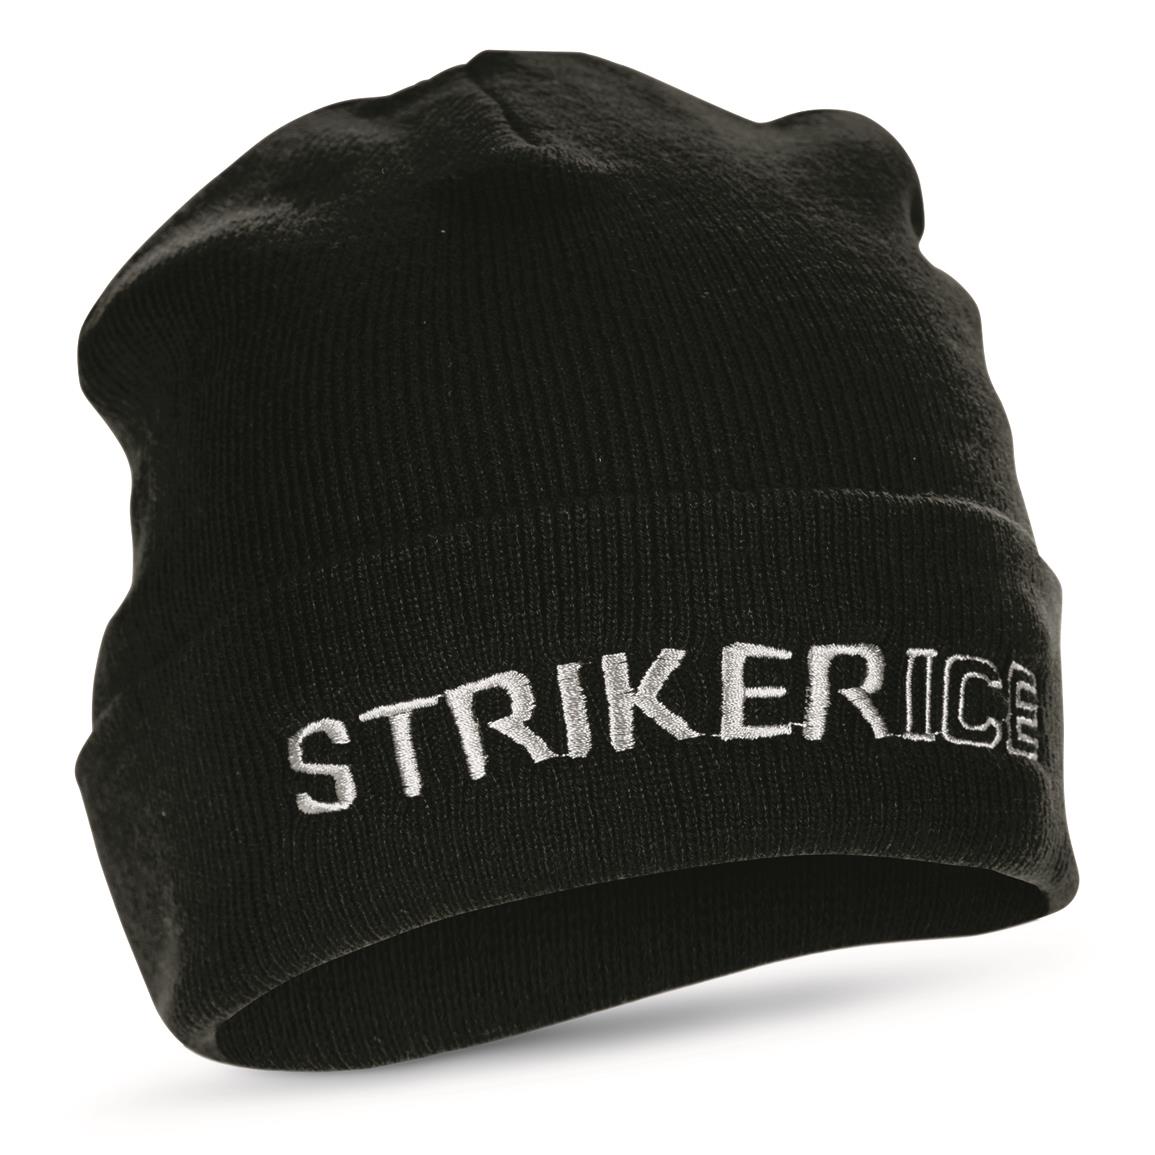 Striker Trekker Stocking Hat, Black